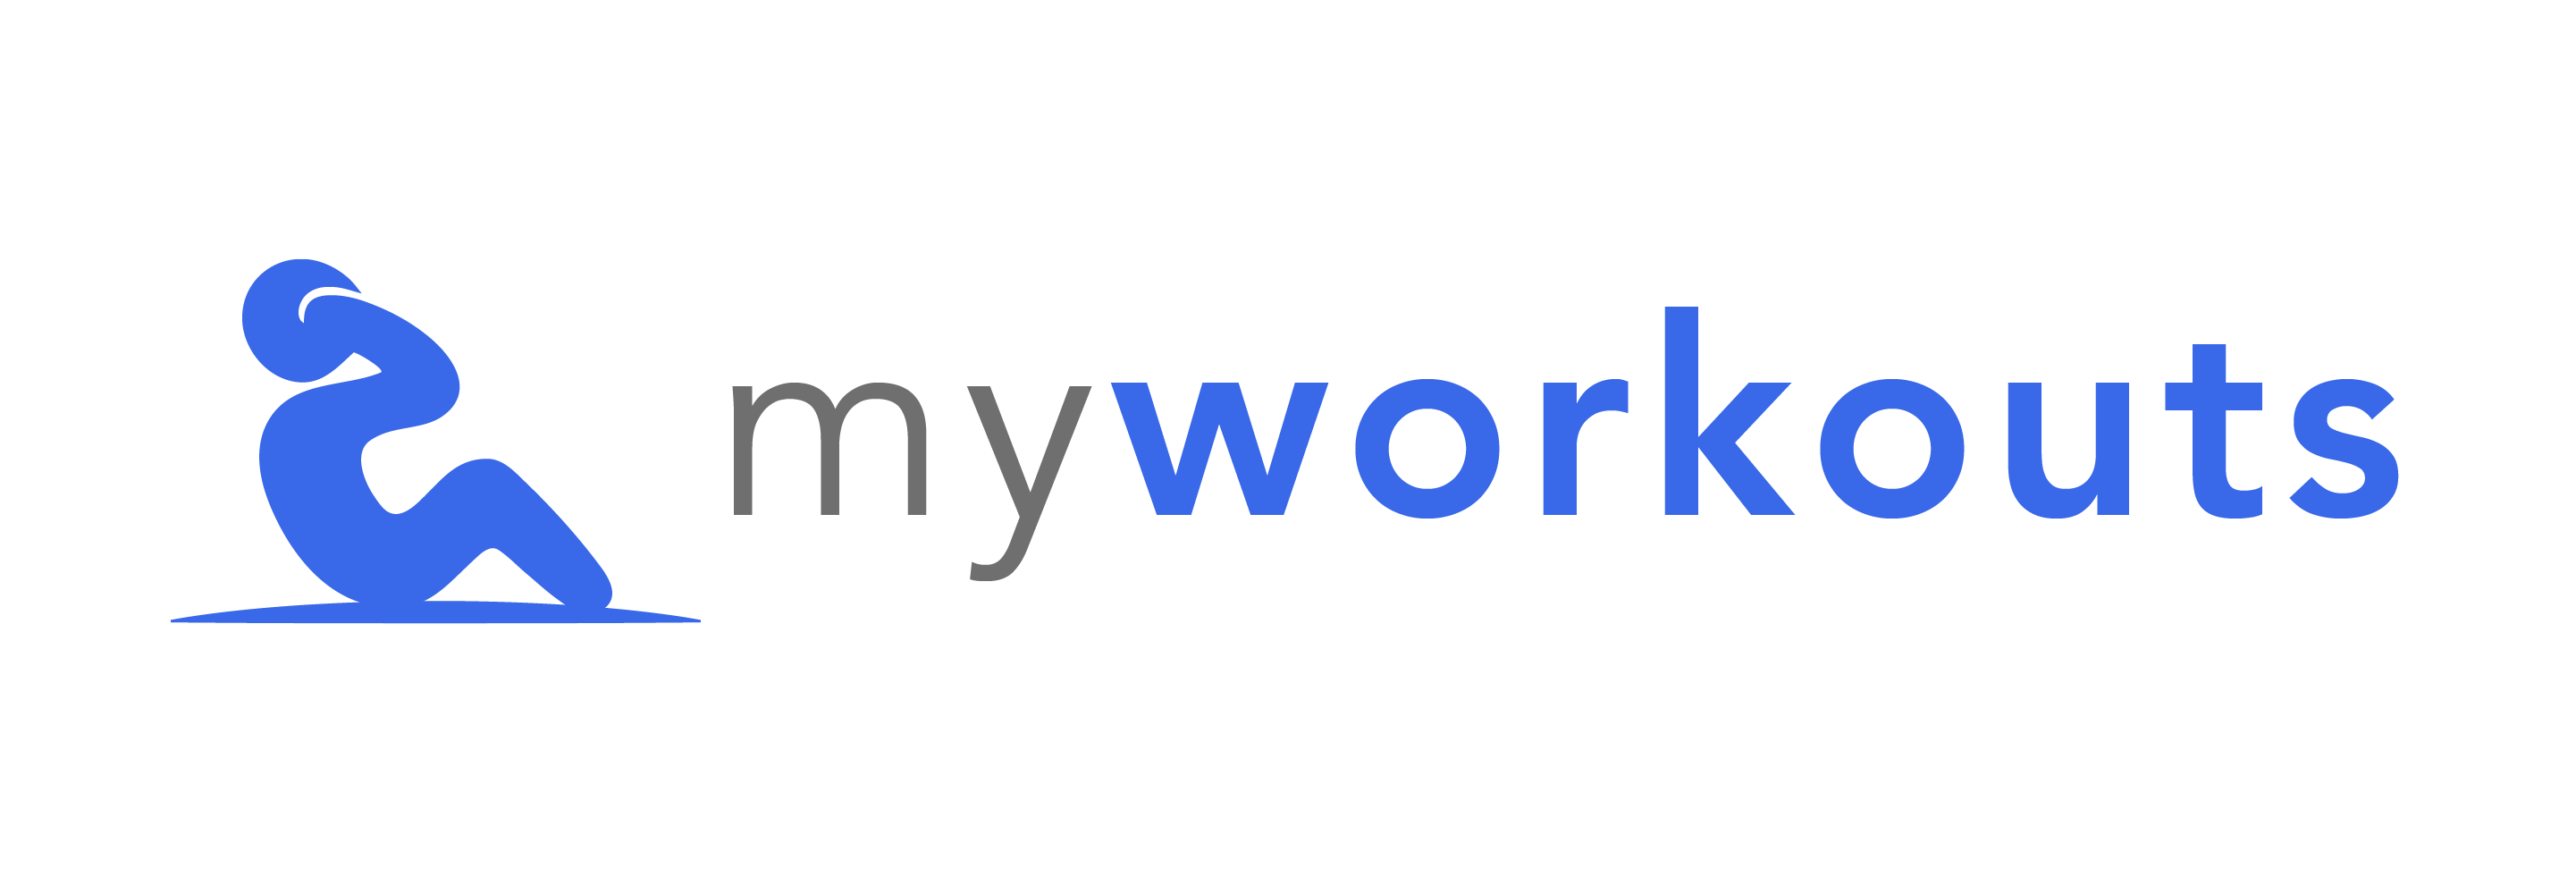 myworkouts.io logo